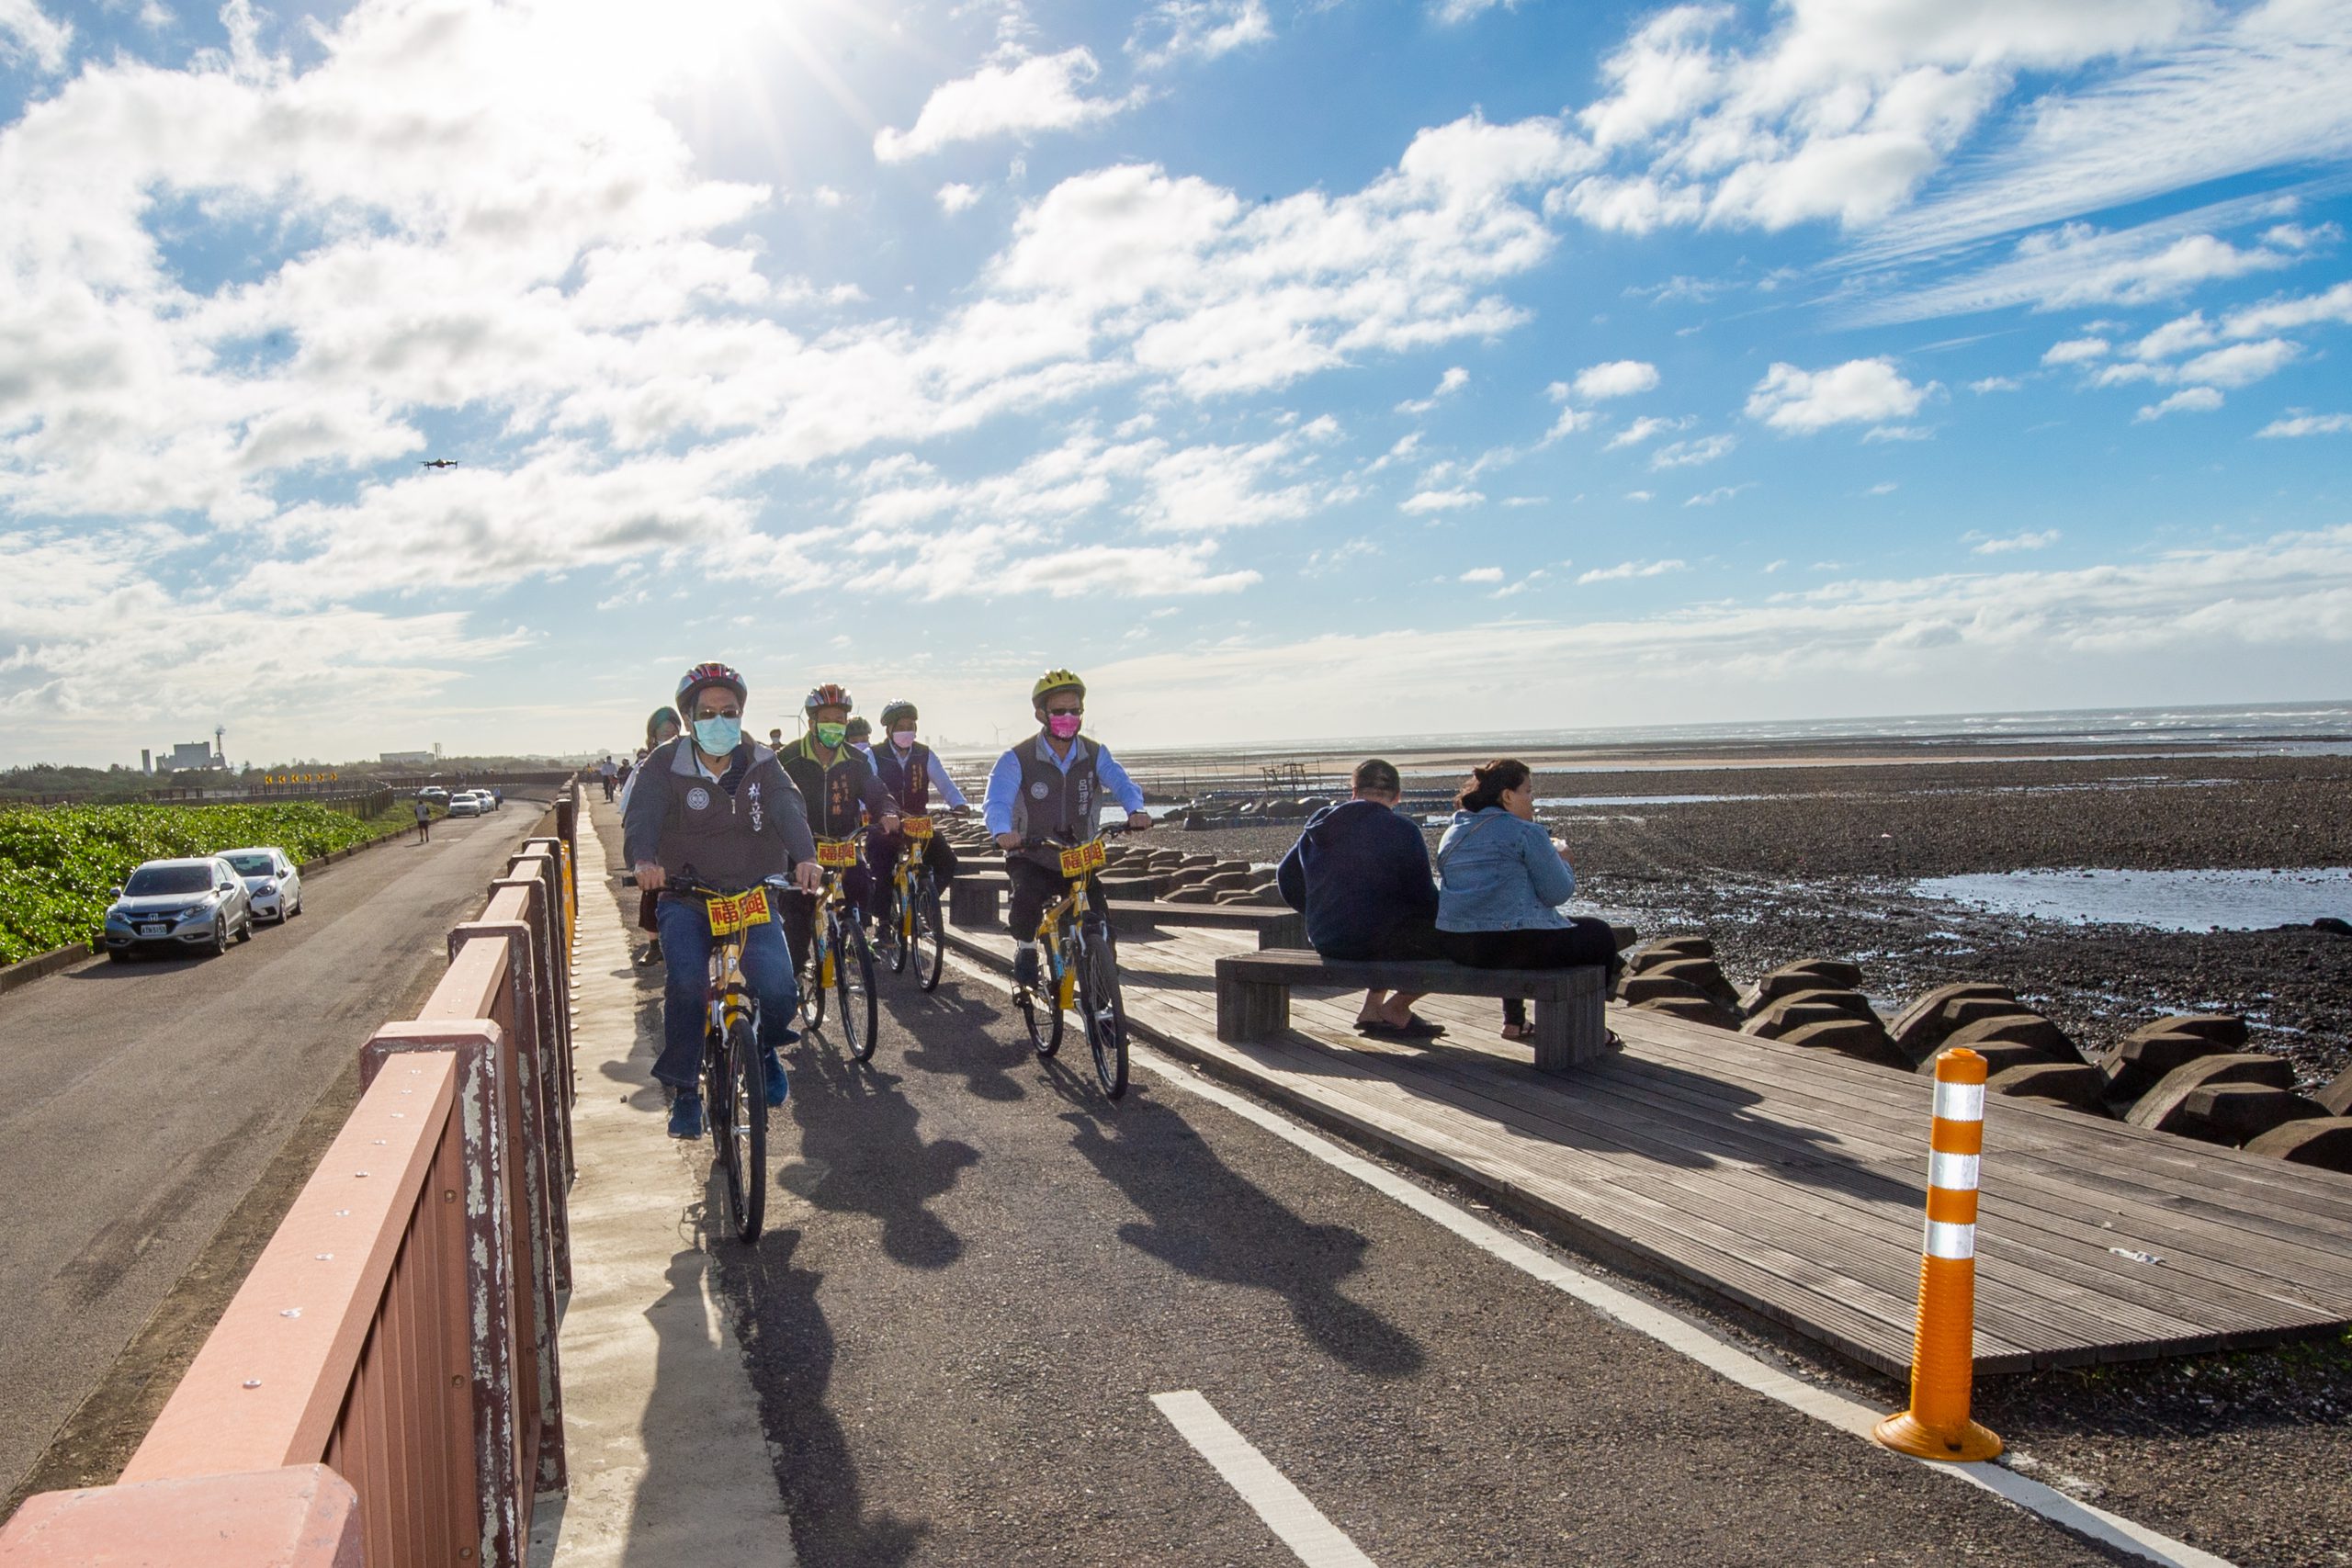 單車悠遊騎乘大園濱海自行車道 沿途欣賞捕鰻設施地景創作